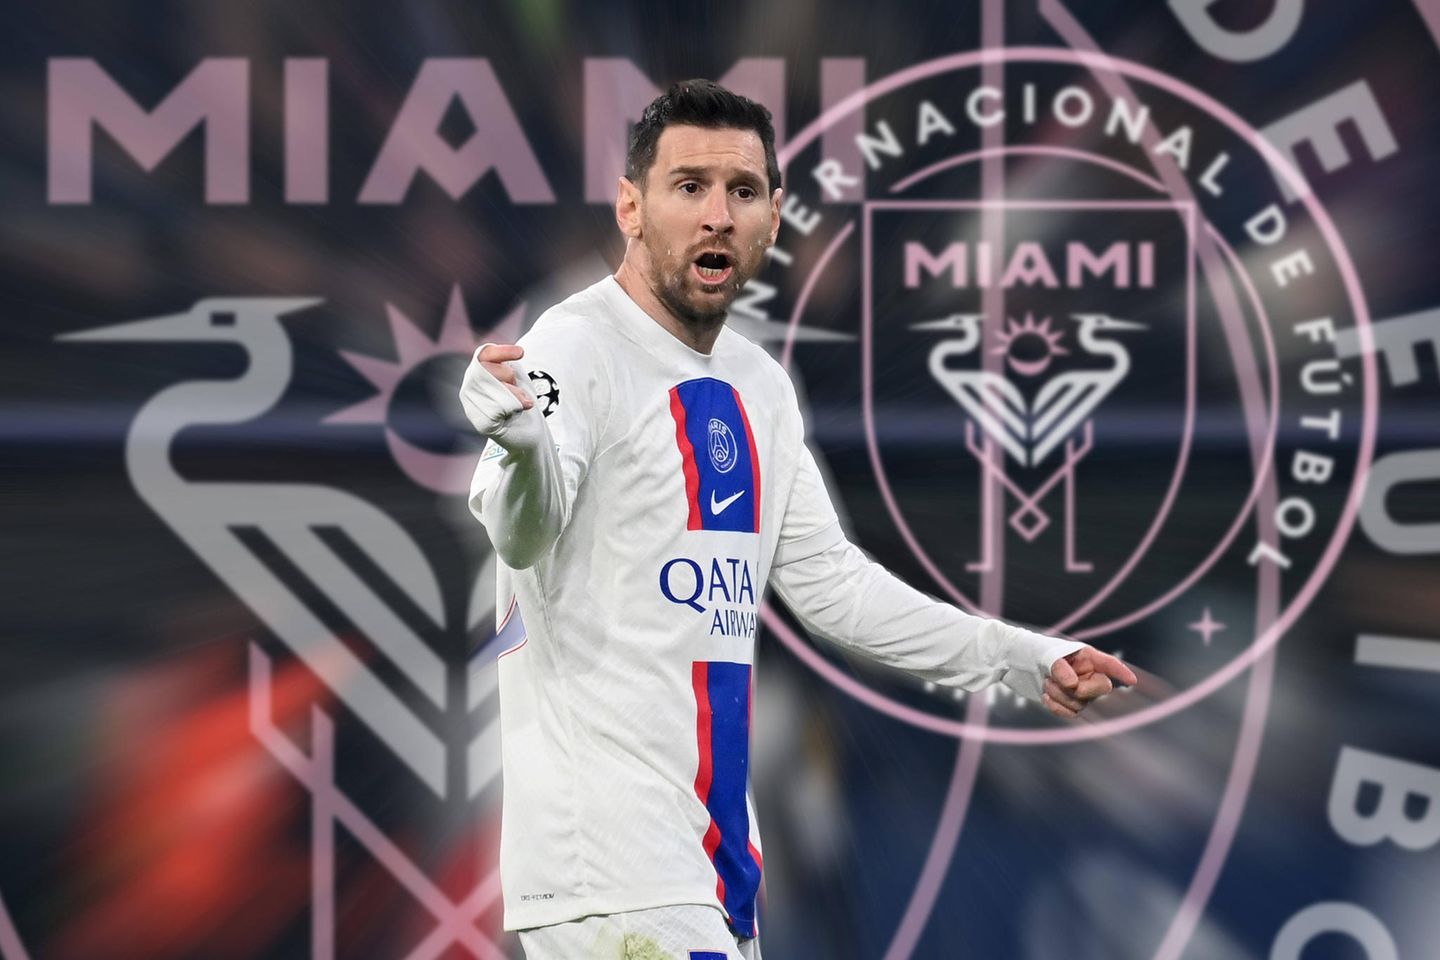 Die Marke Messi hat mit Miami die richtige Wahl getroffen“